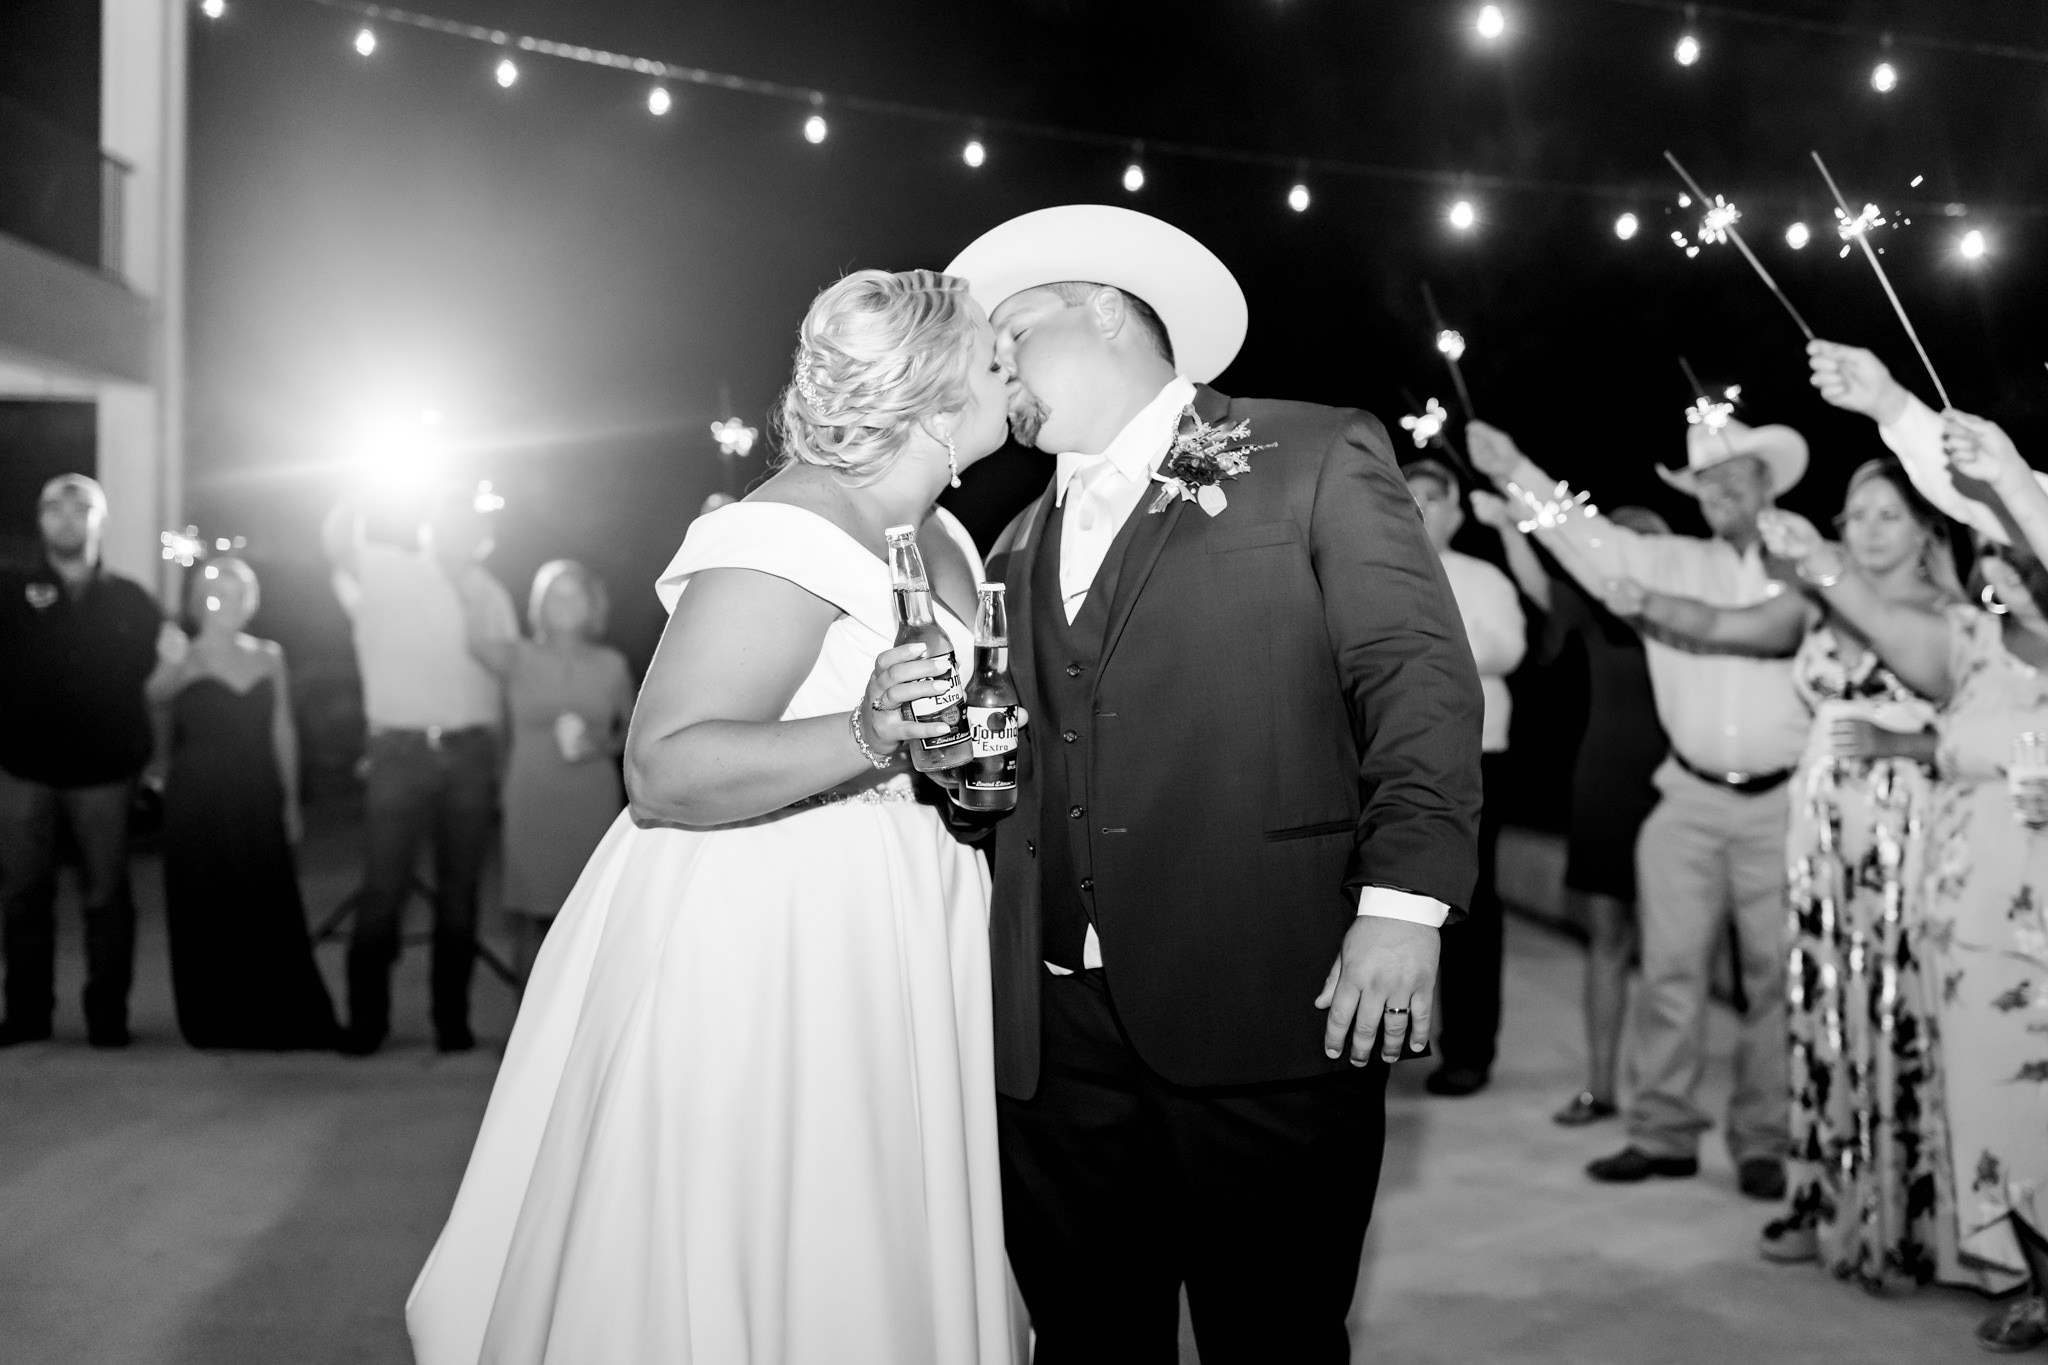 A Burgundy & Blush Wedding at Kendall Point in Boerne, TX by Dawn Elizabeth Studios, San Antonio Wedding Photographer